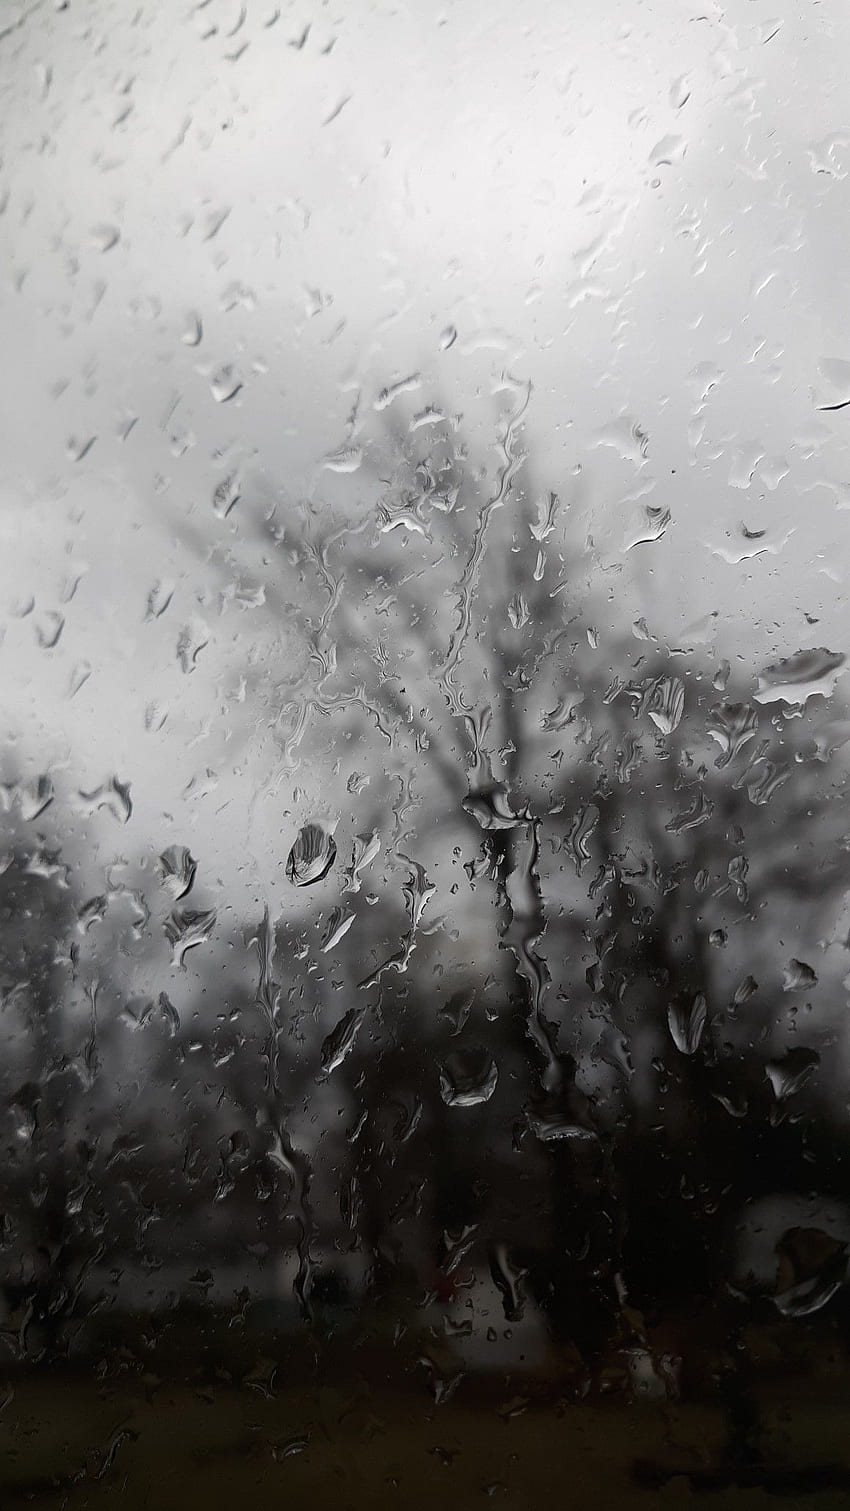 Hình nền iPhone mưa sẽ đem lại cho bạn cảm giác mát mẻ, tươi mới và thư thái khi nhìn vào chiếc điện thoại của mình. Với hình ảnh tuyệt đẹp của mưa đổ trên màn hình, bạn có thể tận hưởng được khoảnh khắc đầy tình cảm với mẫu hình nền này. 